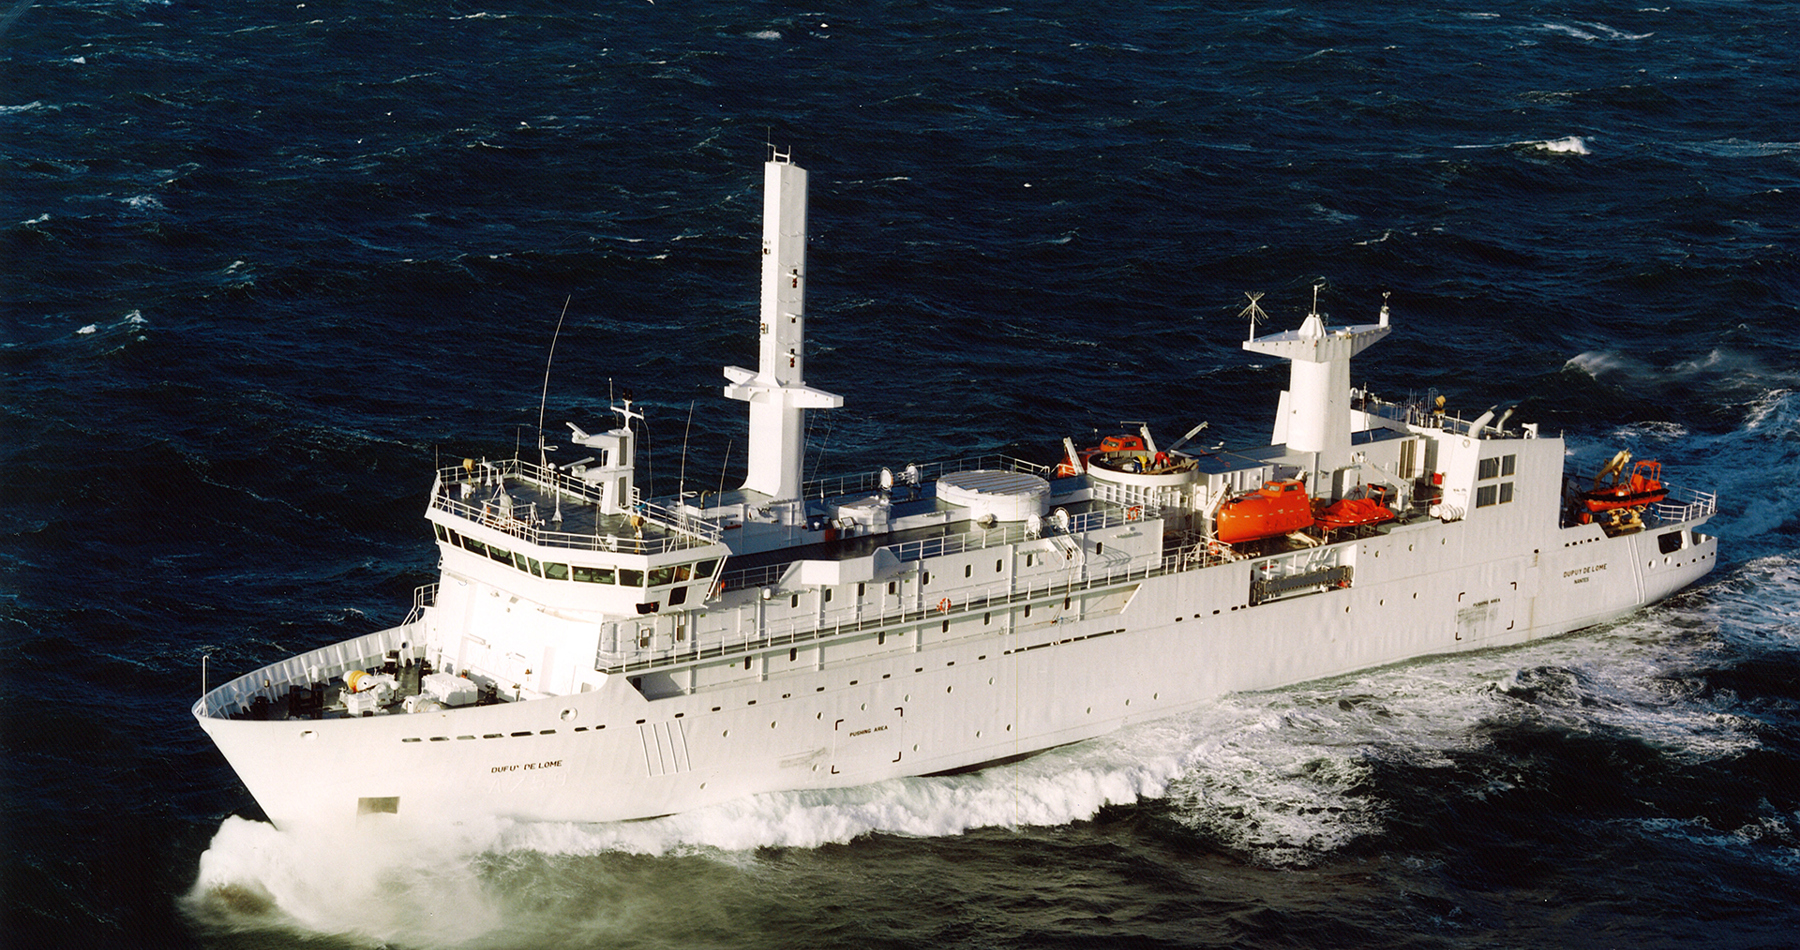 Naval research vessel 'DUPUY DE LÔME'